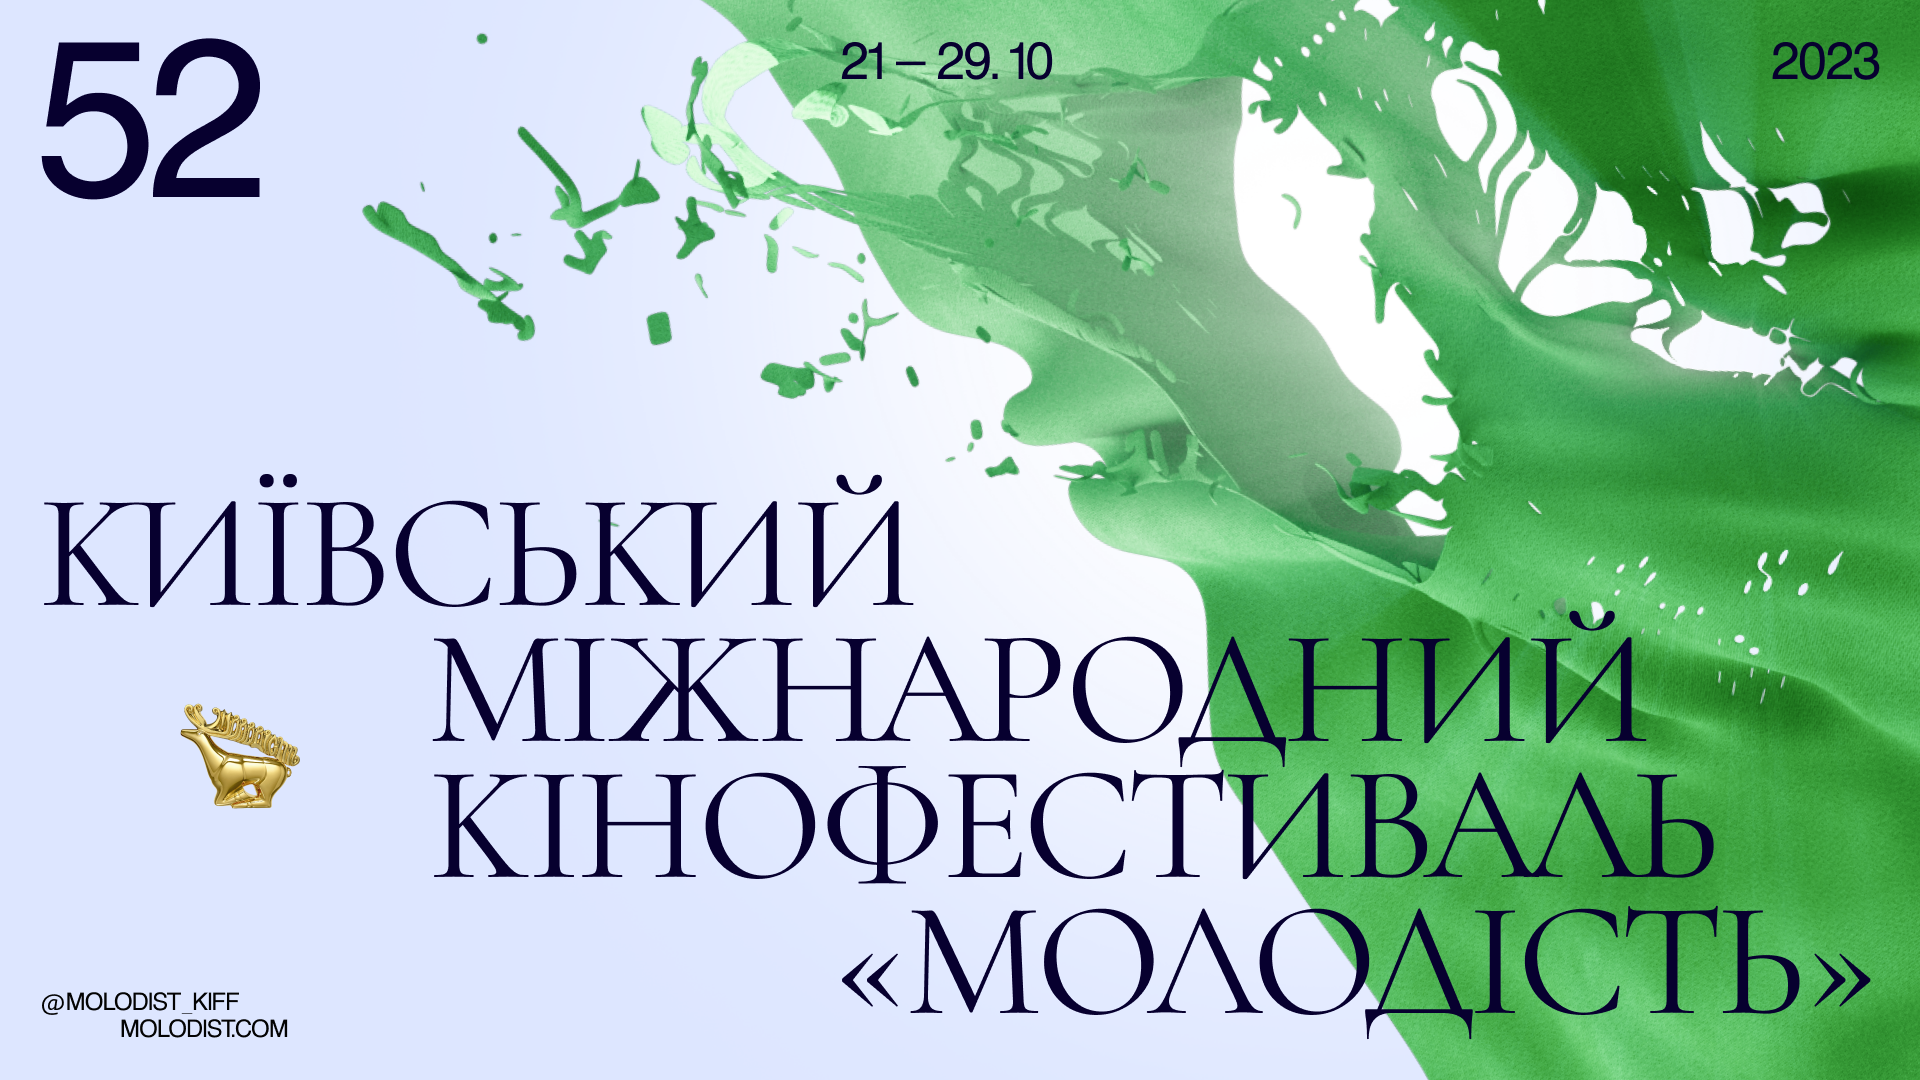 Київський міжнародний кінофестиваль «Молодість»